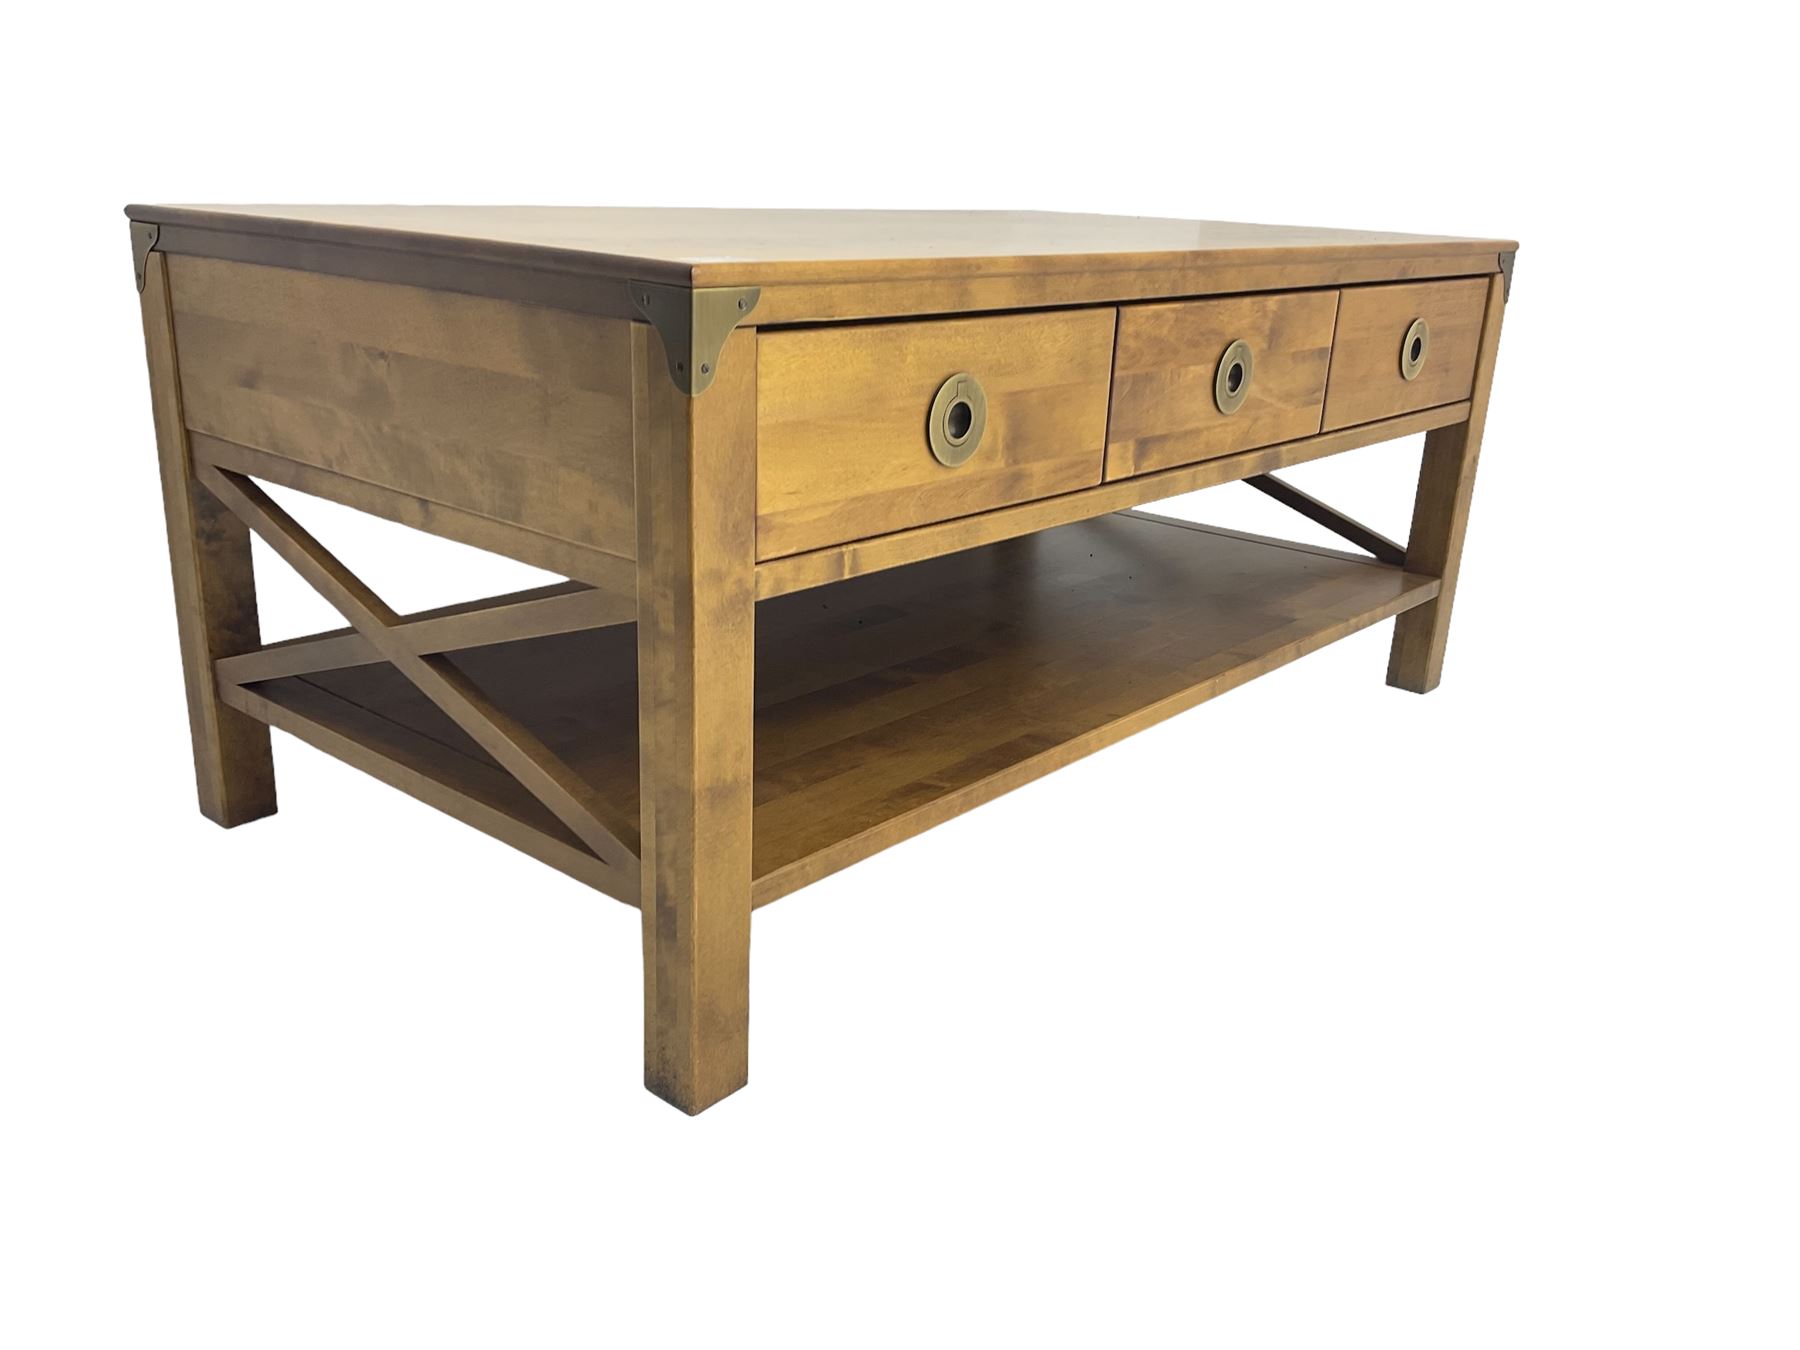 Rectangular hardwood coffee table - Image 4 of 6